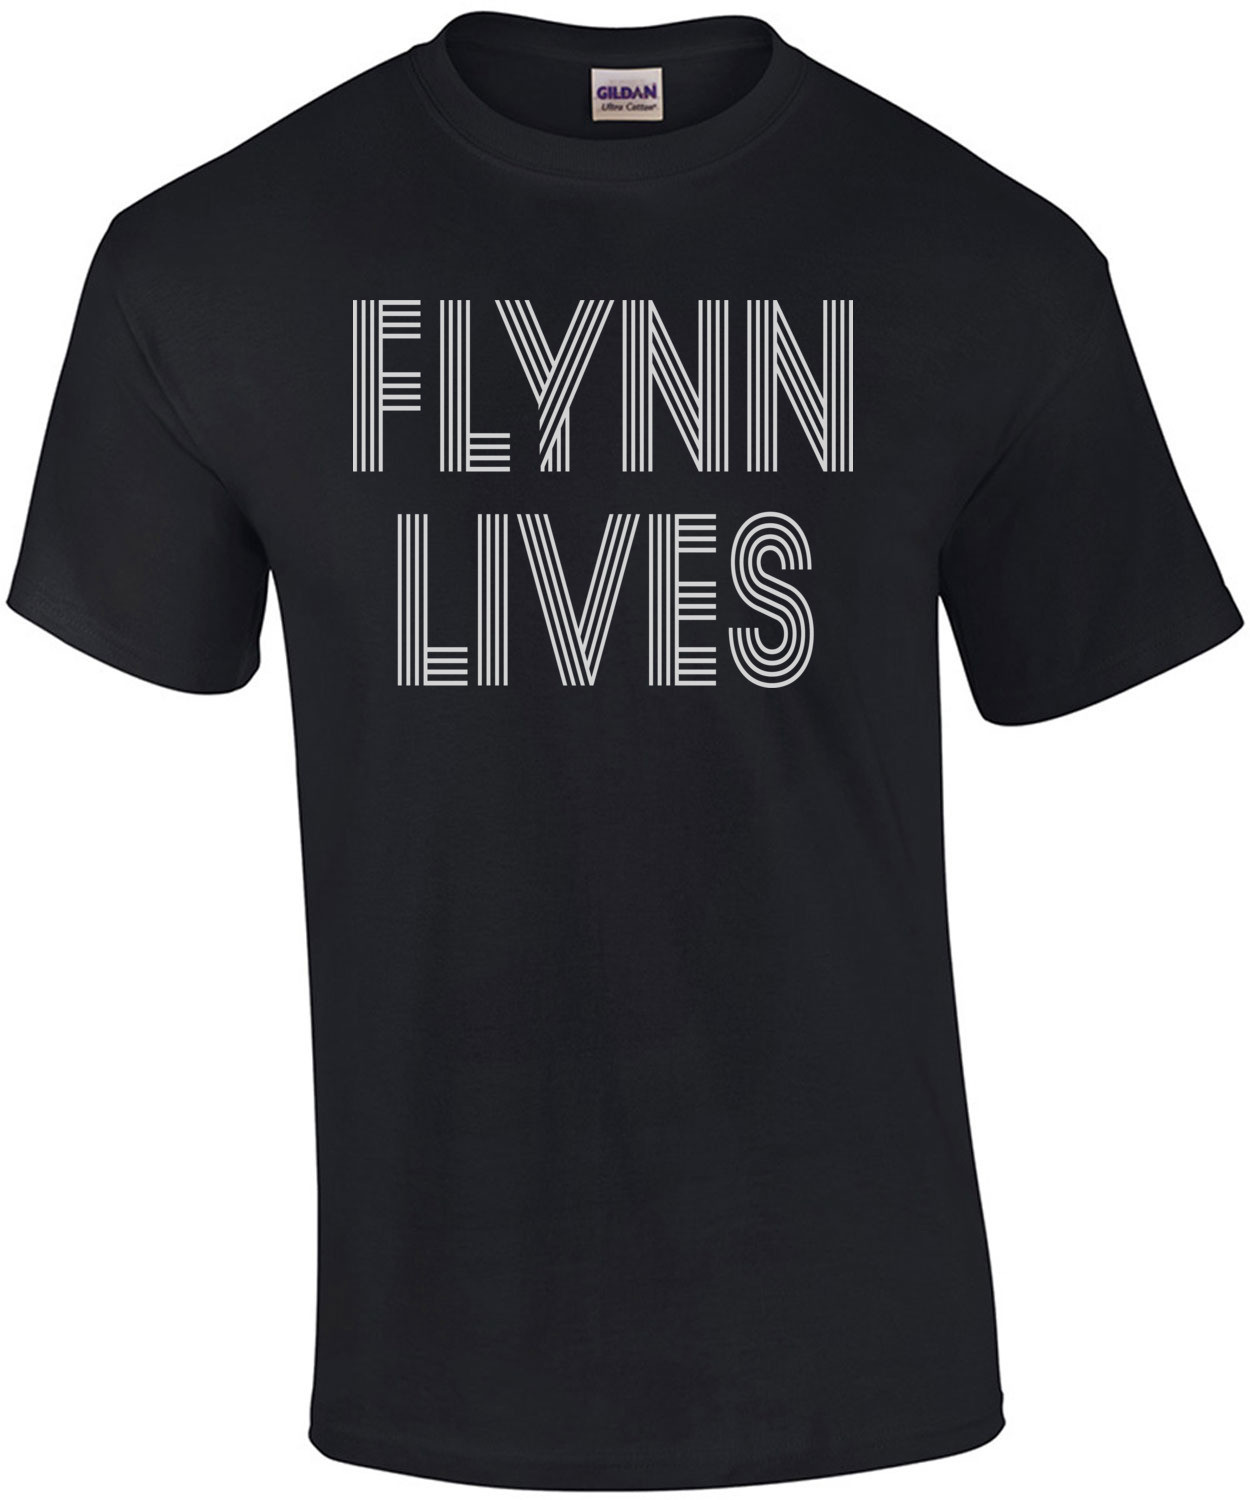 Flynn Lives - Tron T-Shirt